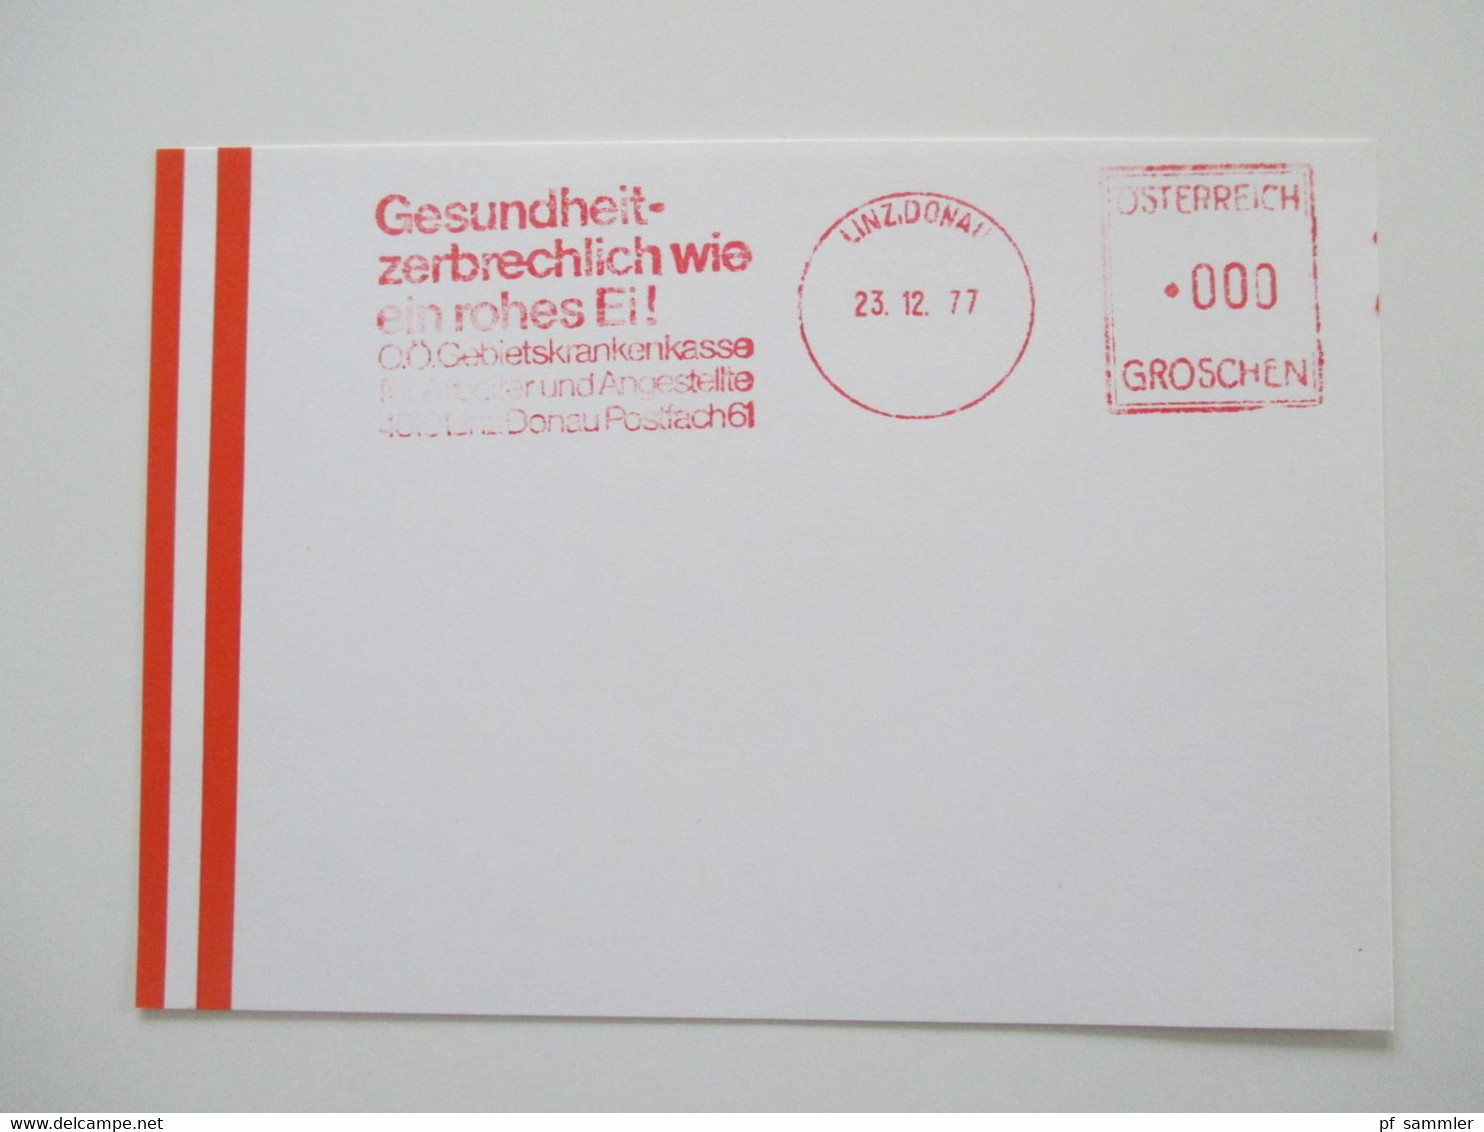 Österreich 1976 - 78 Freistempel mit Wert 0000 Groschen insgesamt 29 Stempelbelege / Blanko Karten alles verschiedene St